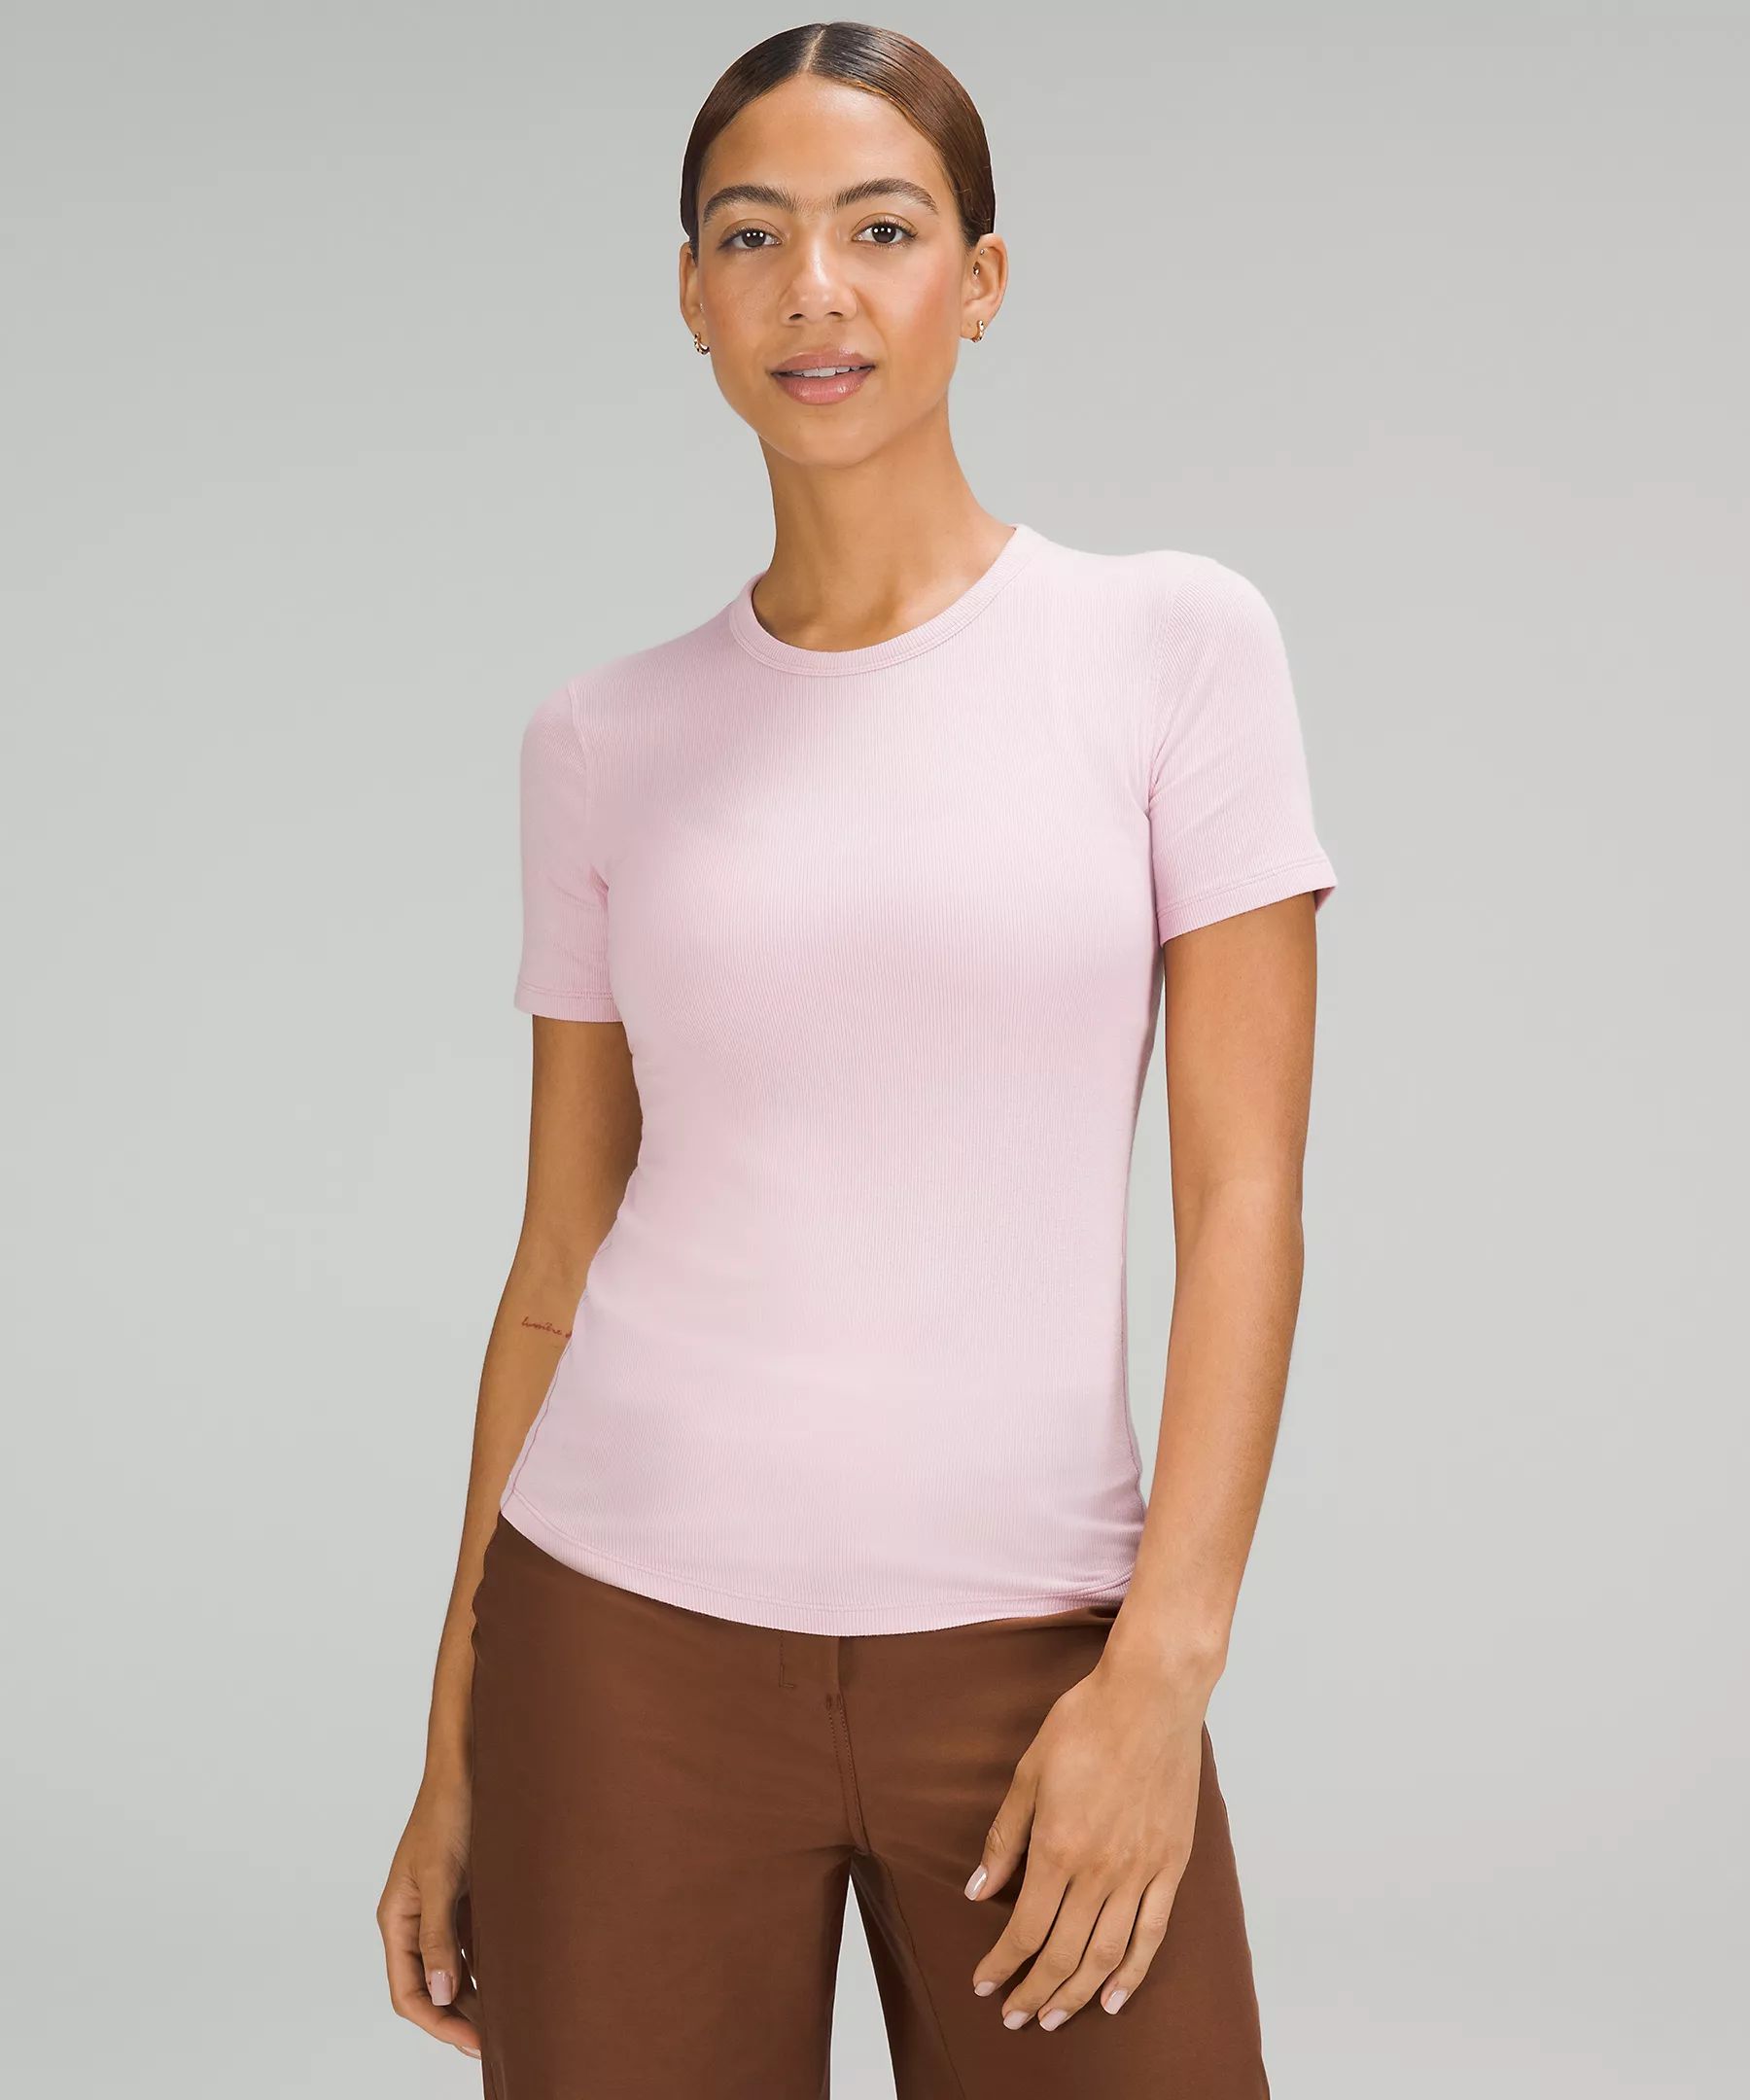 Hold Tight Short-Sleeve Shirt | Women's Short Sleeve Shirts & Tee's | lululemon | Lululemon (US)